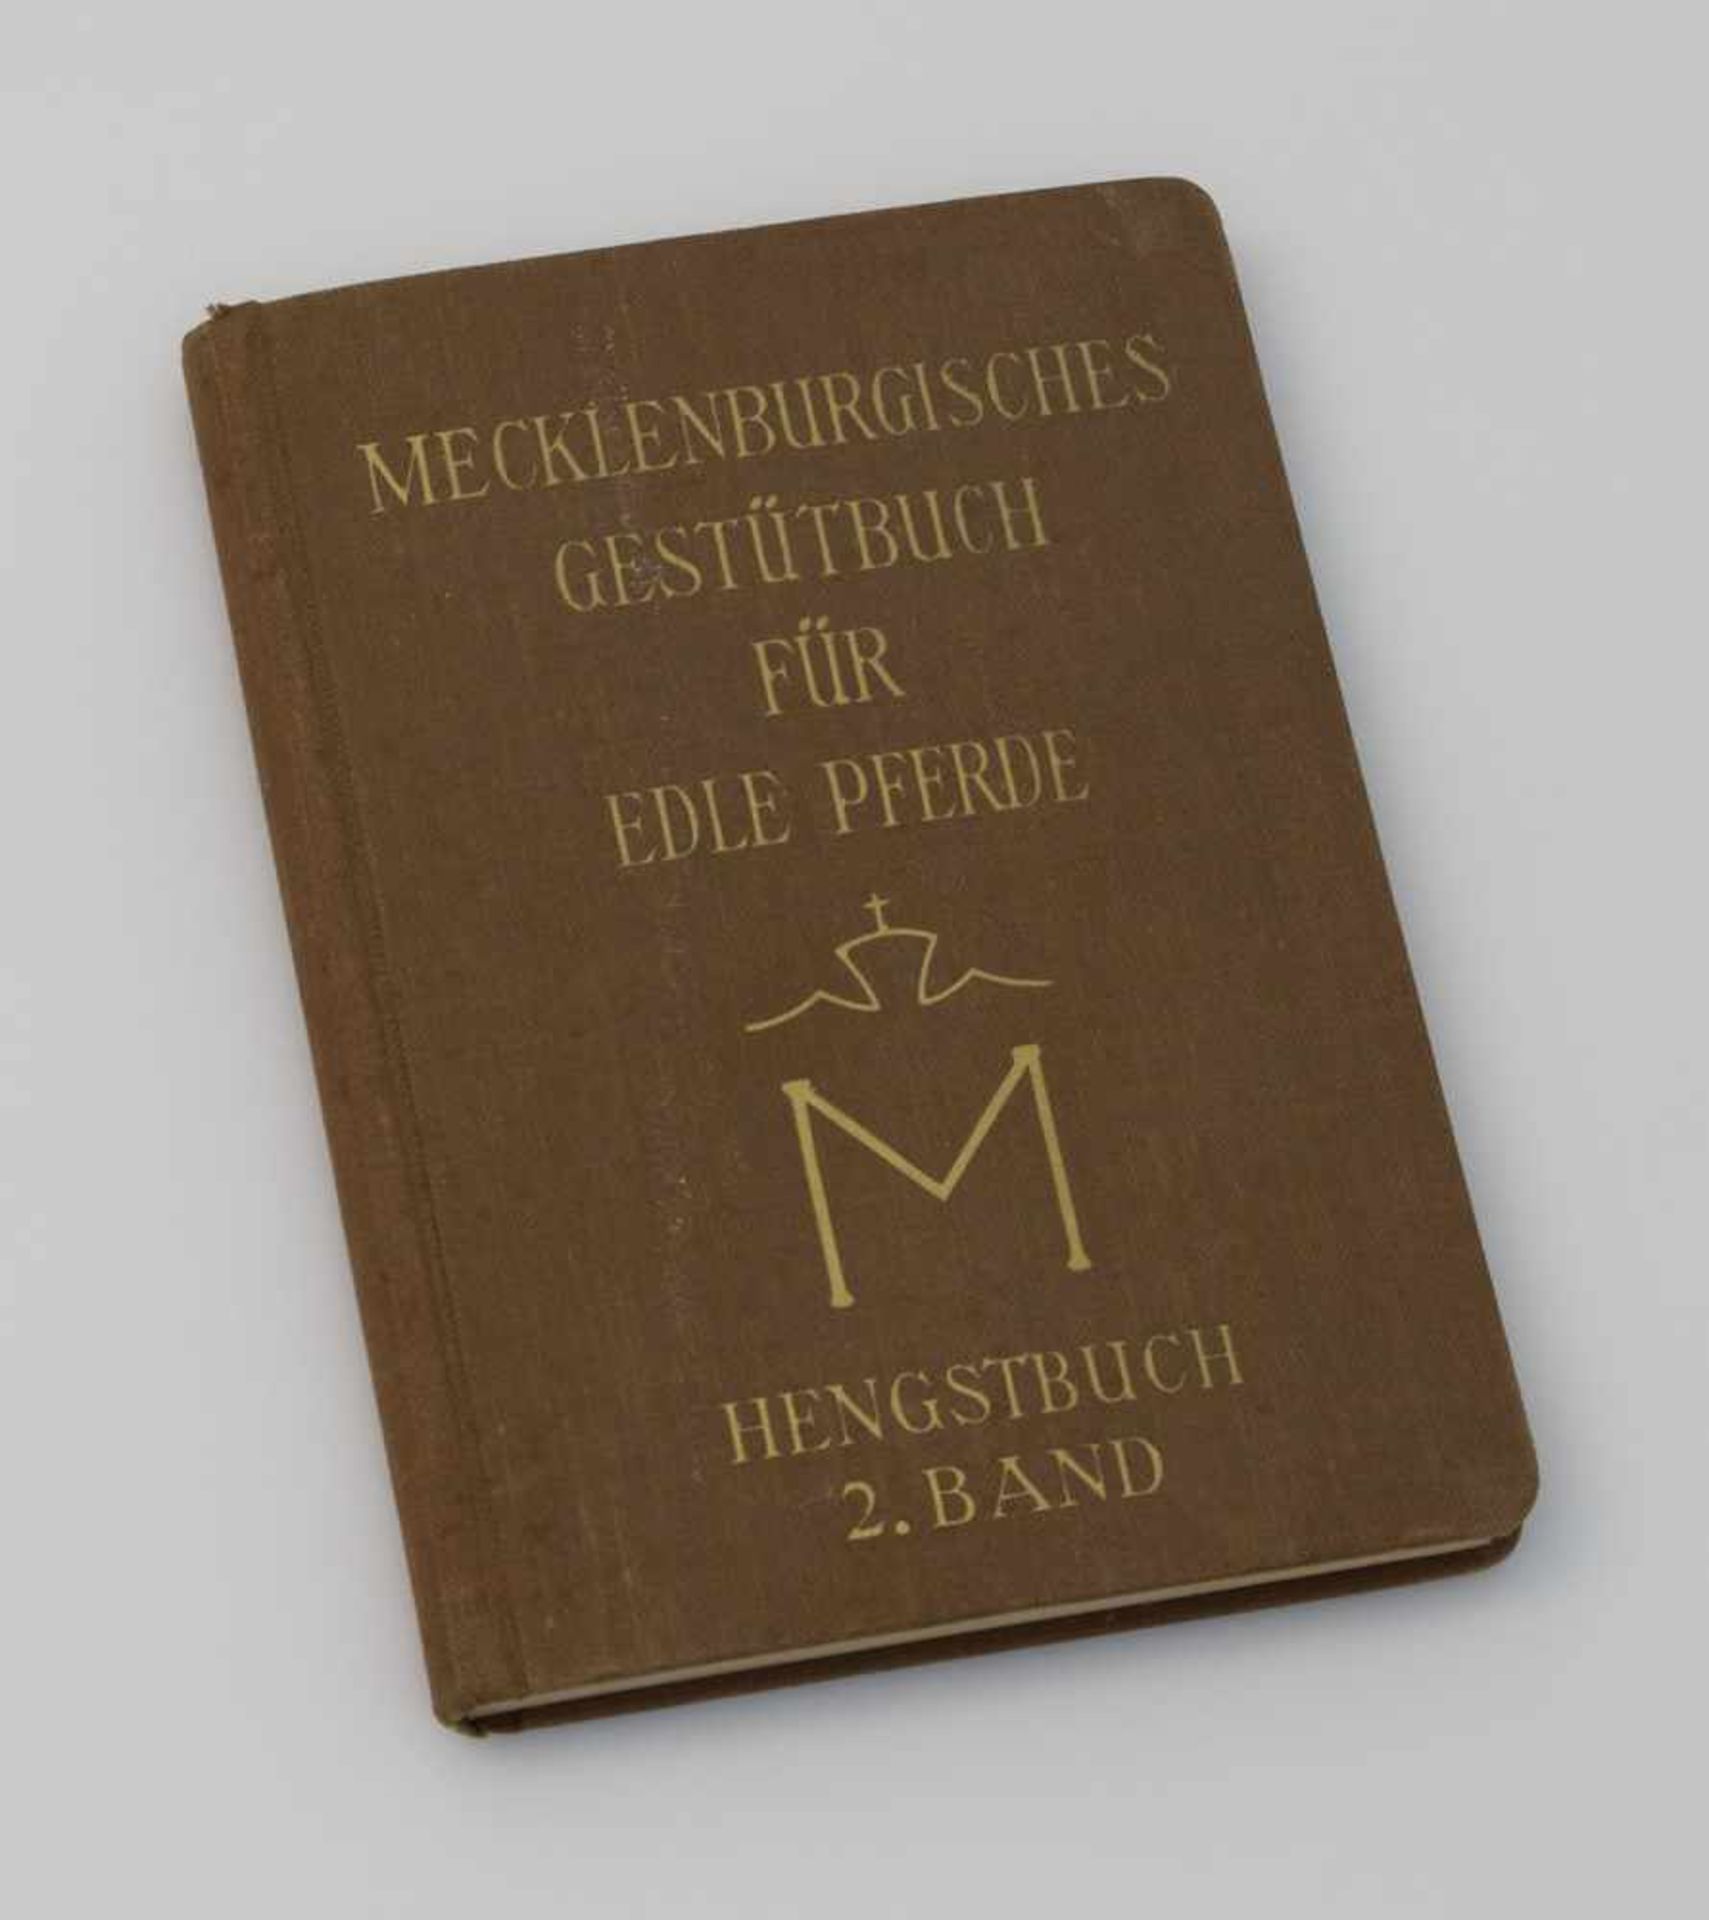 Dr. Viergutz (Hrsg.) "Mecklenburgisches Gestütbuch für edle Pferde" - Hengstbuch II. Bd. 1895-